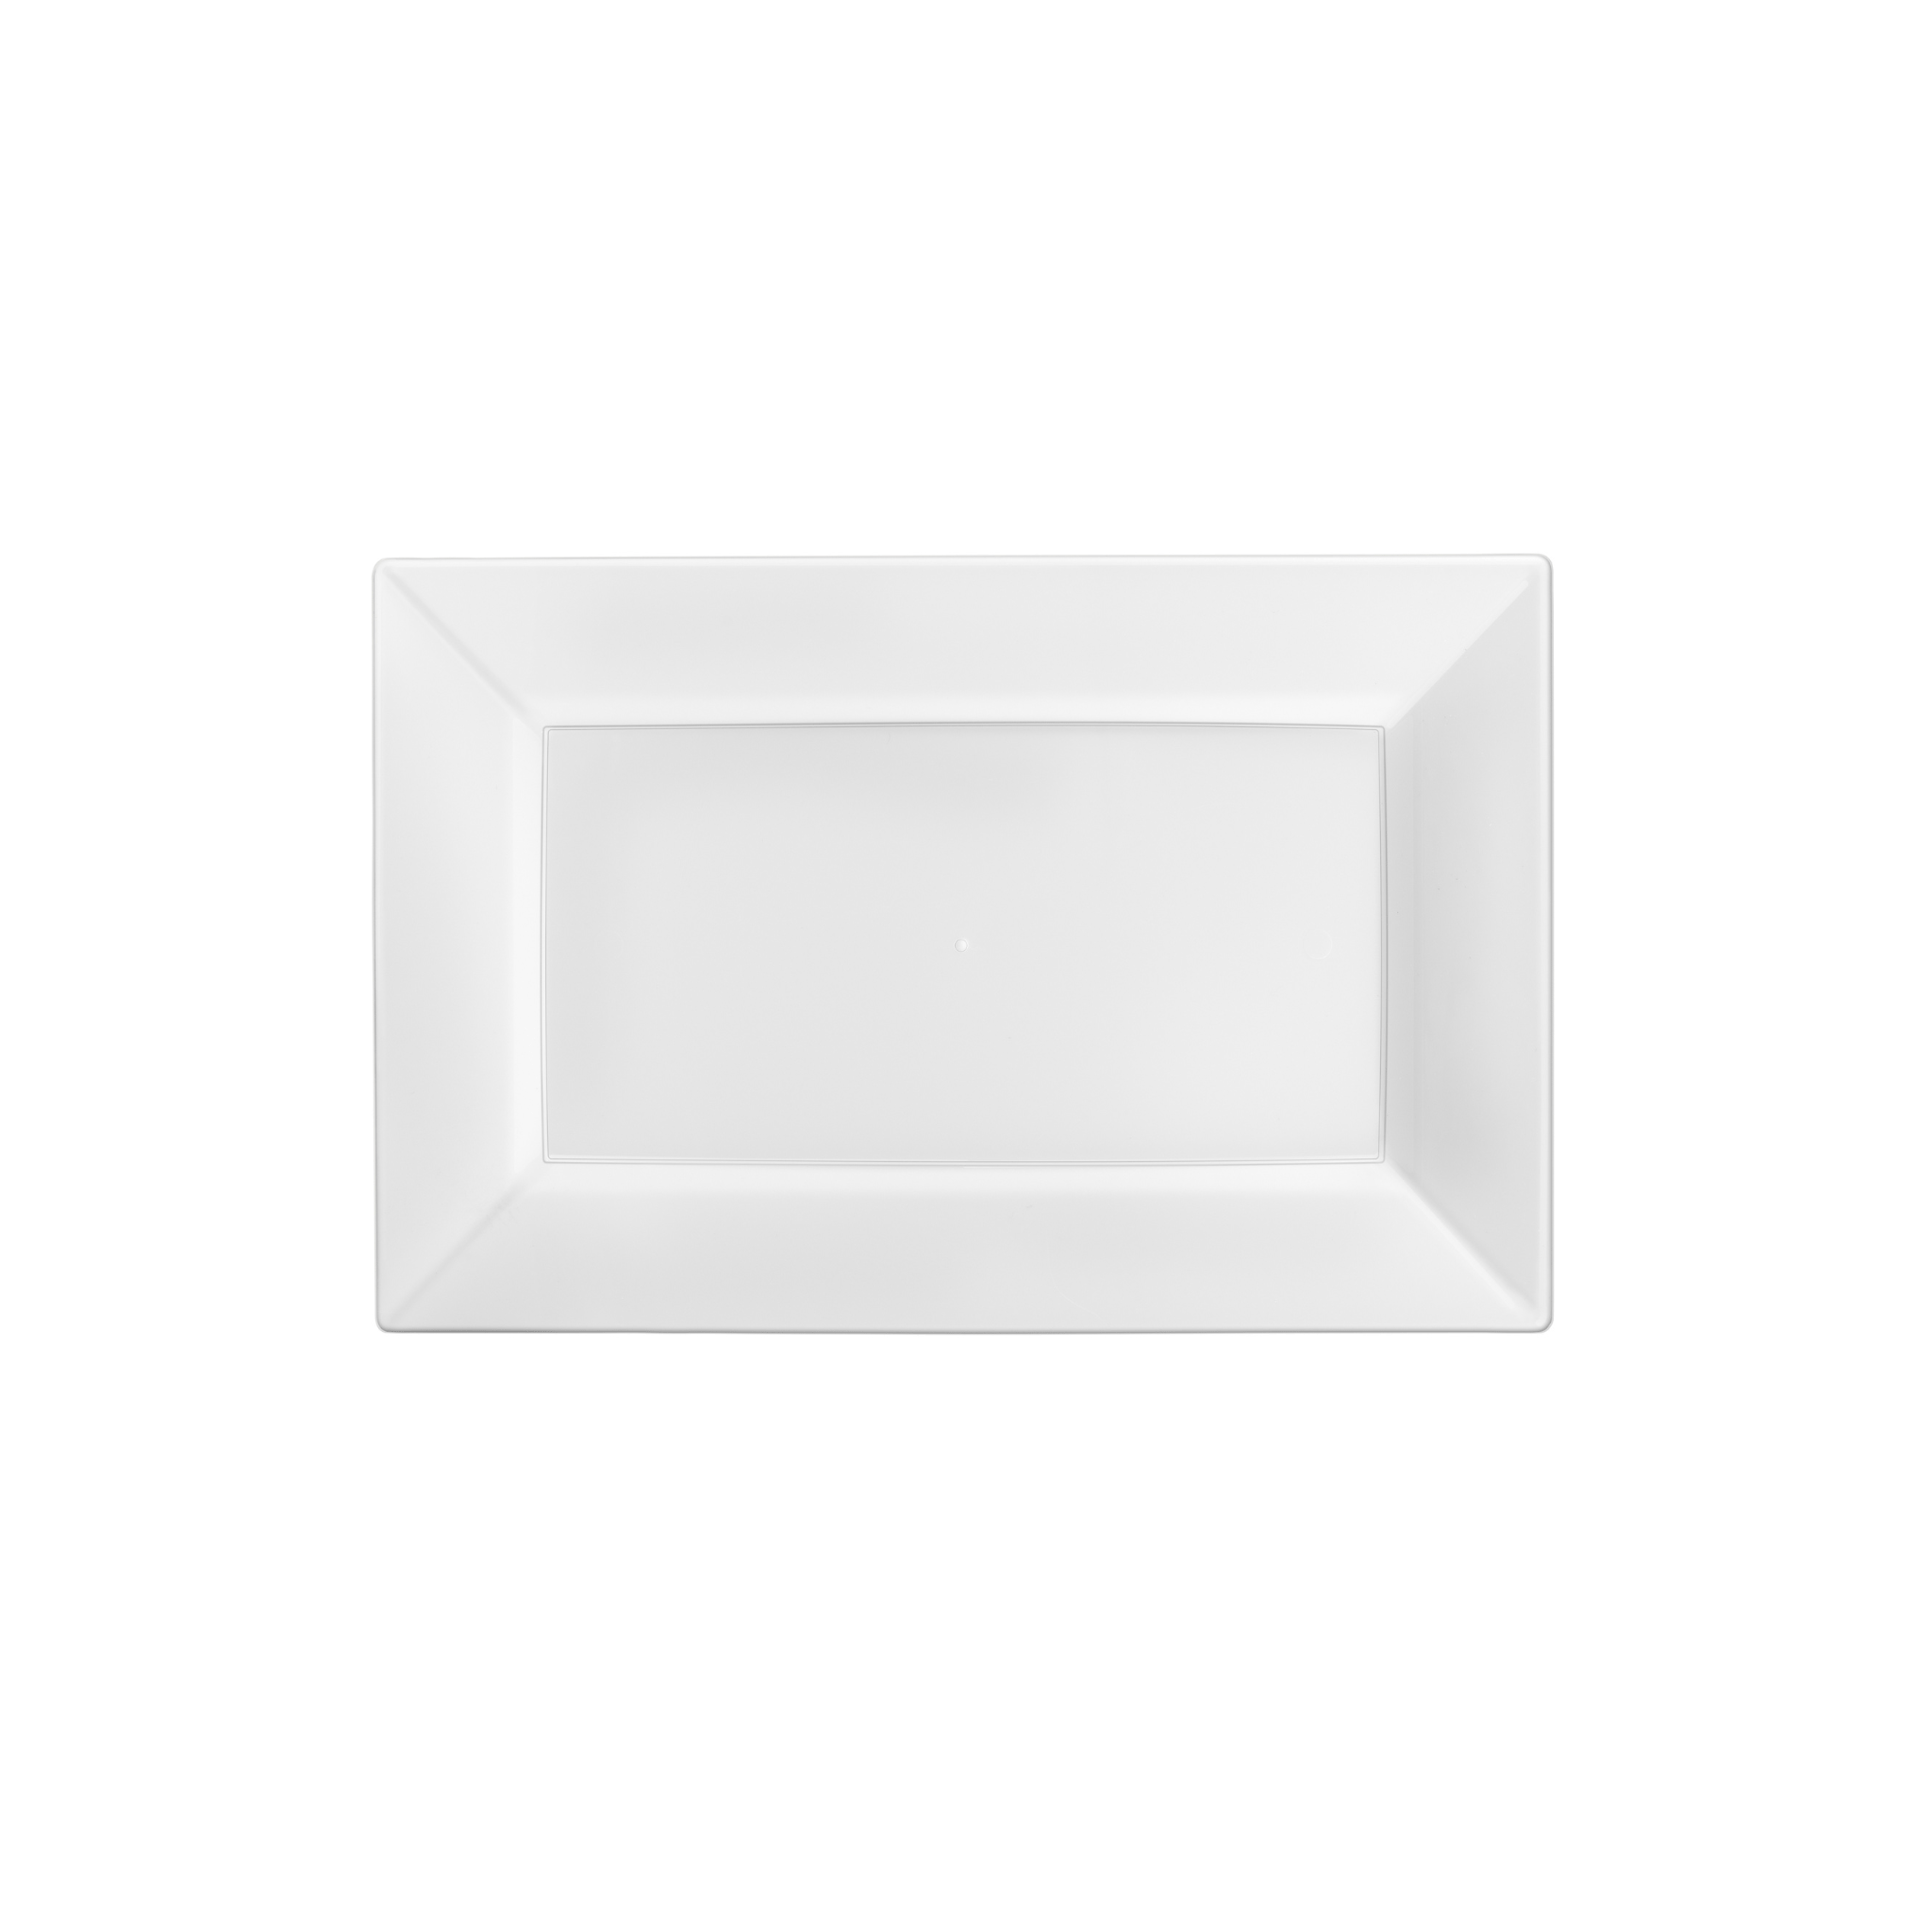 9.5" White Rectangular Plastic Plates (120 Count)